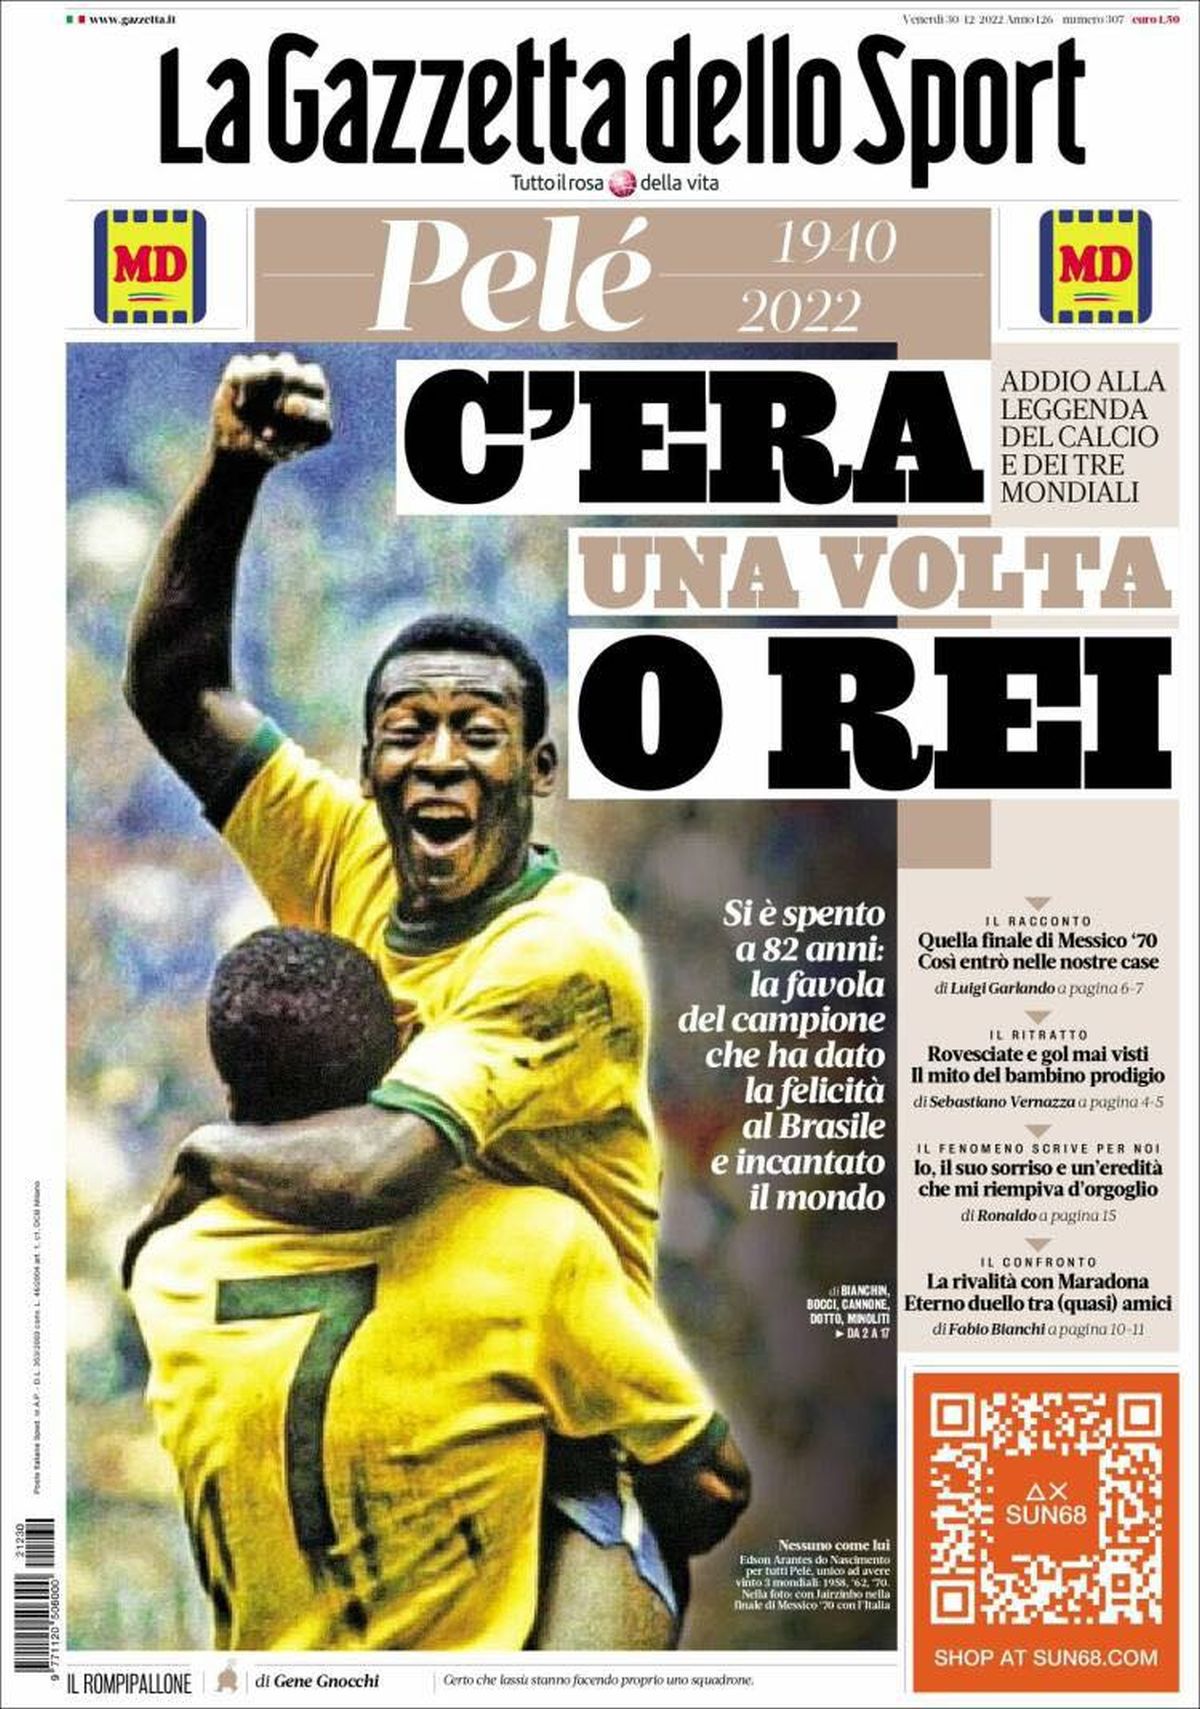 „Niciodată patru litere n-au fost atât de mari” » Cele mai prestigioase publicații ale lumii îi dedică pagini emoționante lui Pelé